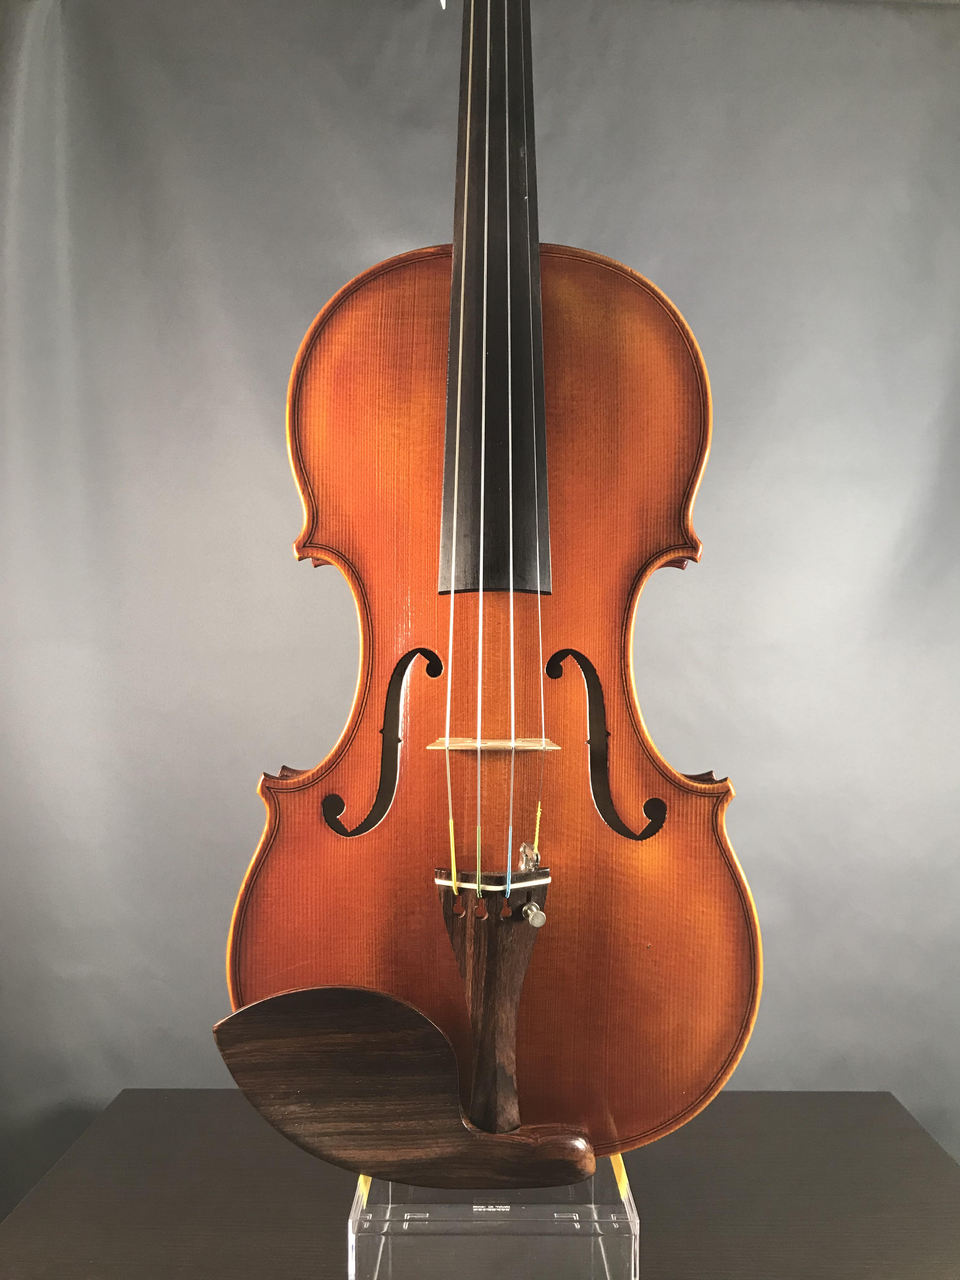 100%新品SALERUDOLPH FIEDLER GV-3 バイオリン 4/4 弦楽器